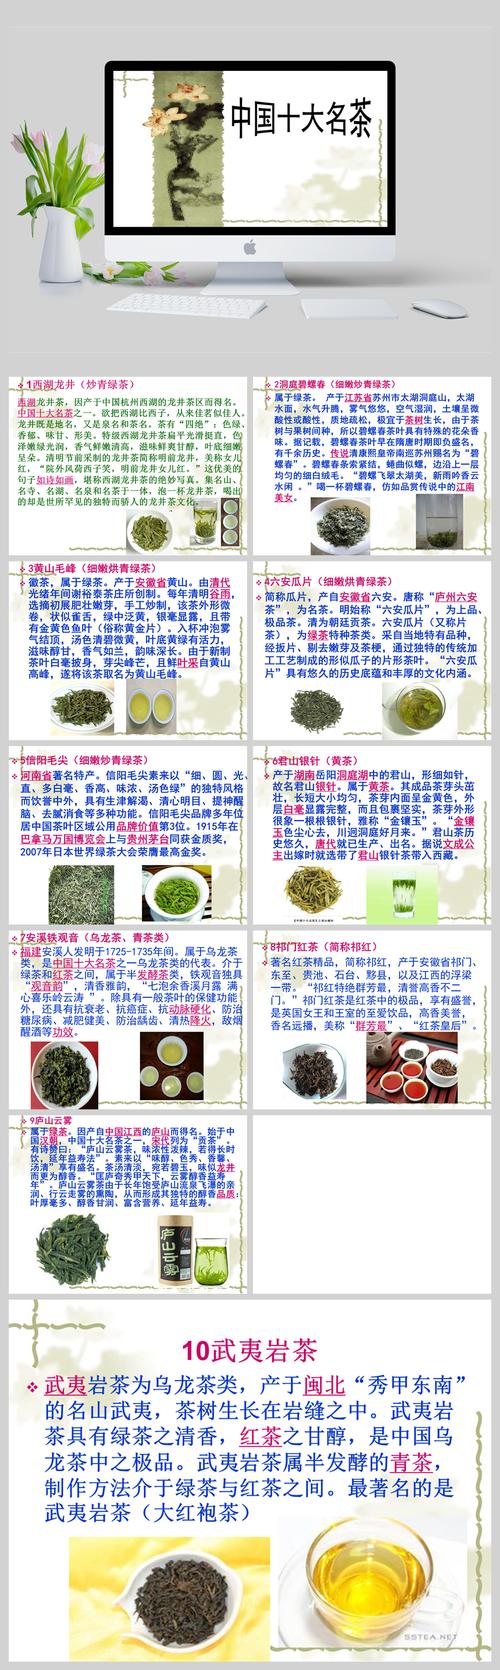 24种名茶名称大全,了解十大名茶的种类